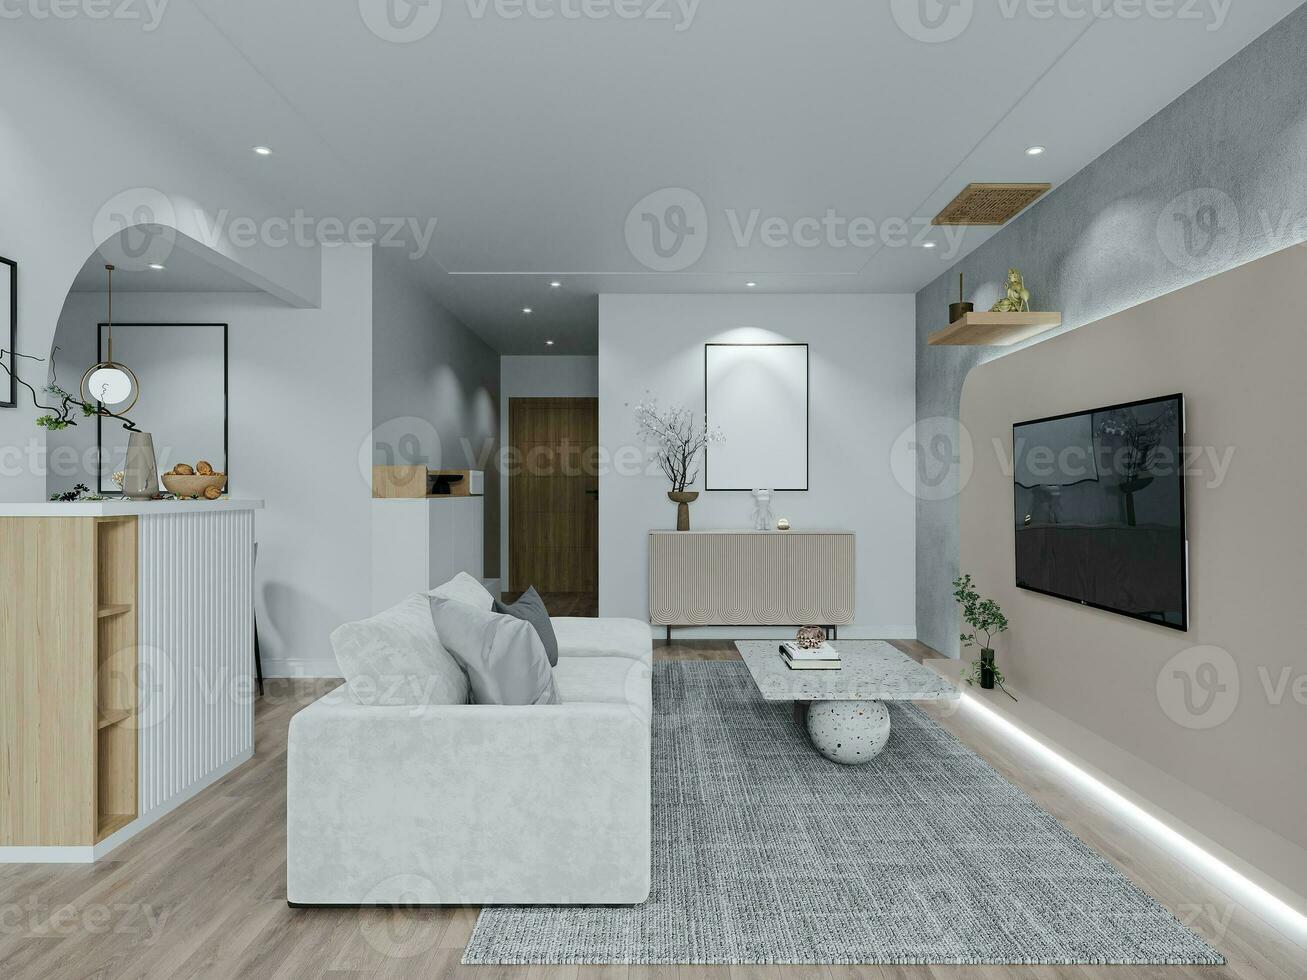 inteligente vivente spazio con semplicità e minimo arte, di legno pavimento, velluto divano 3d interpretazione foto